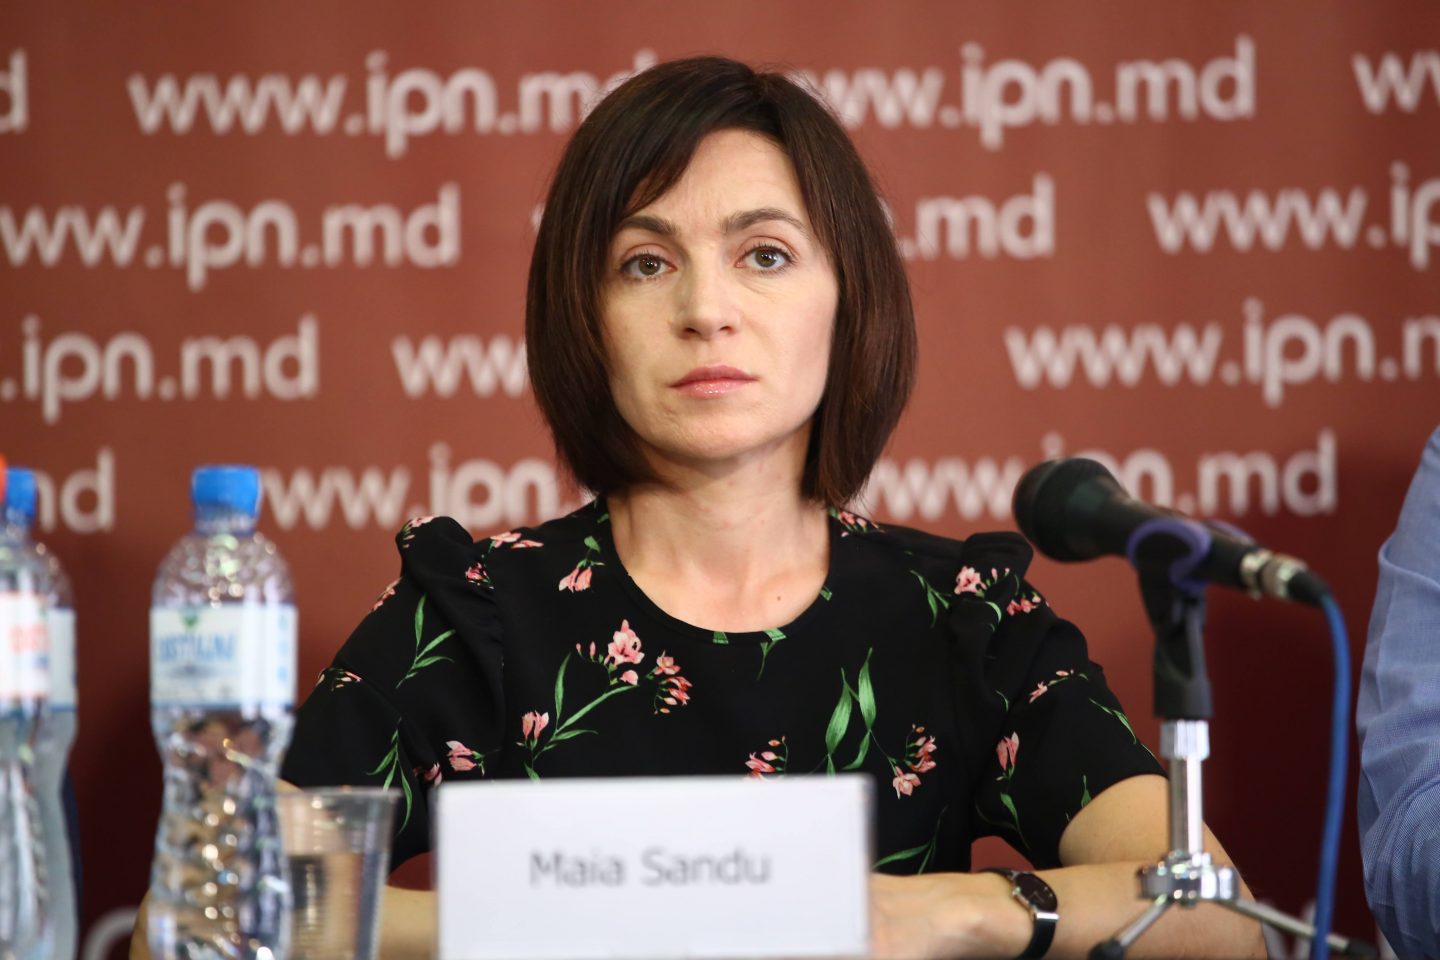 VIDEO // Alexei Corcimari: Maia Sandu va băga Moldova în datorii. Nu are echipă